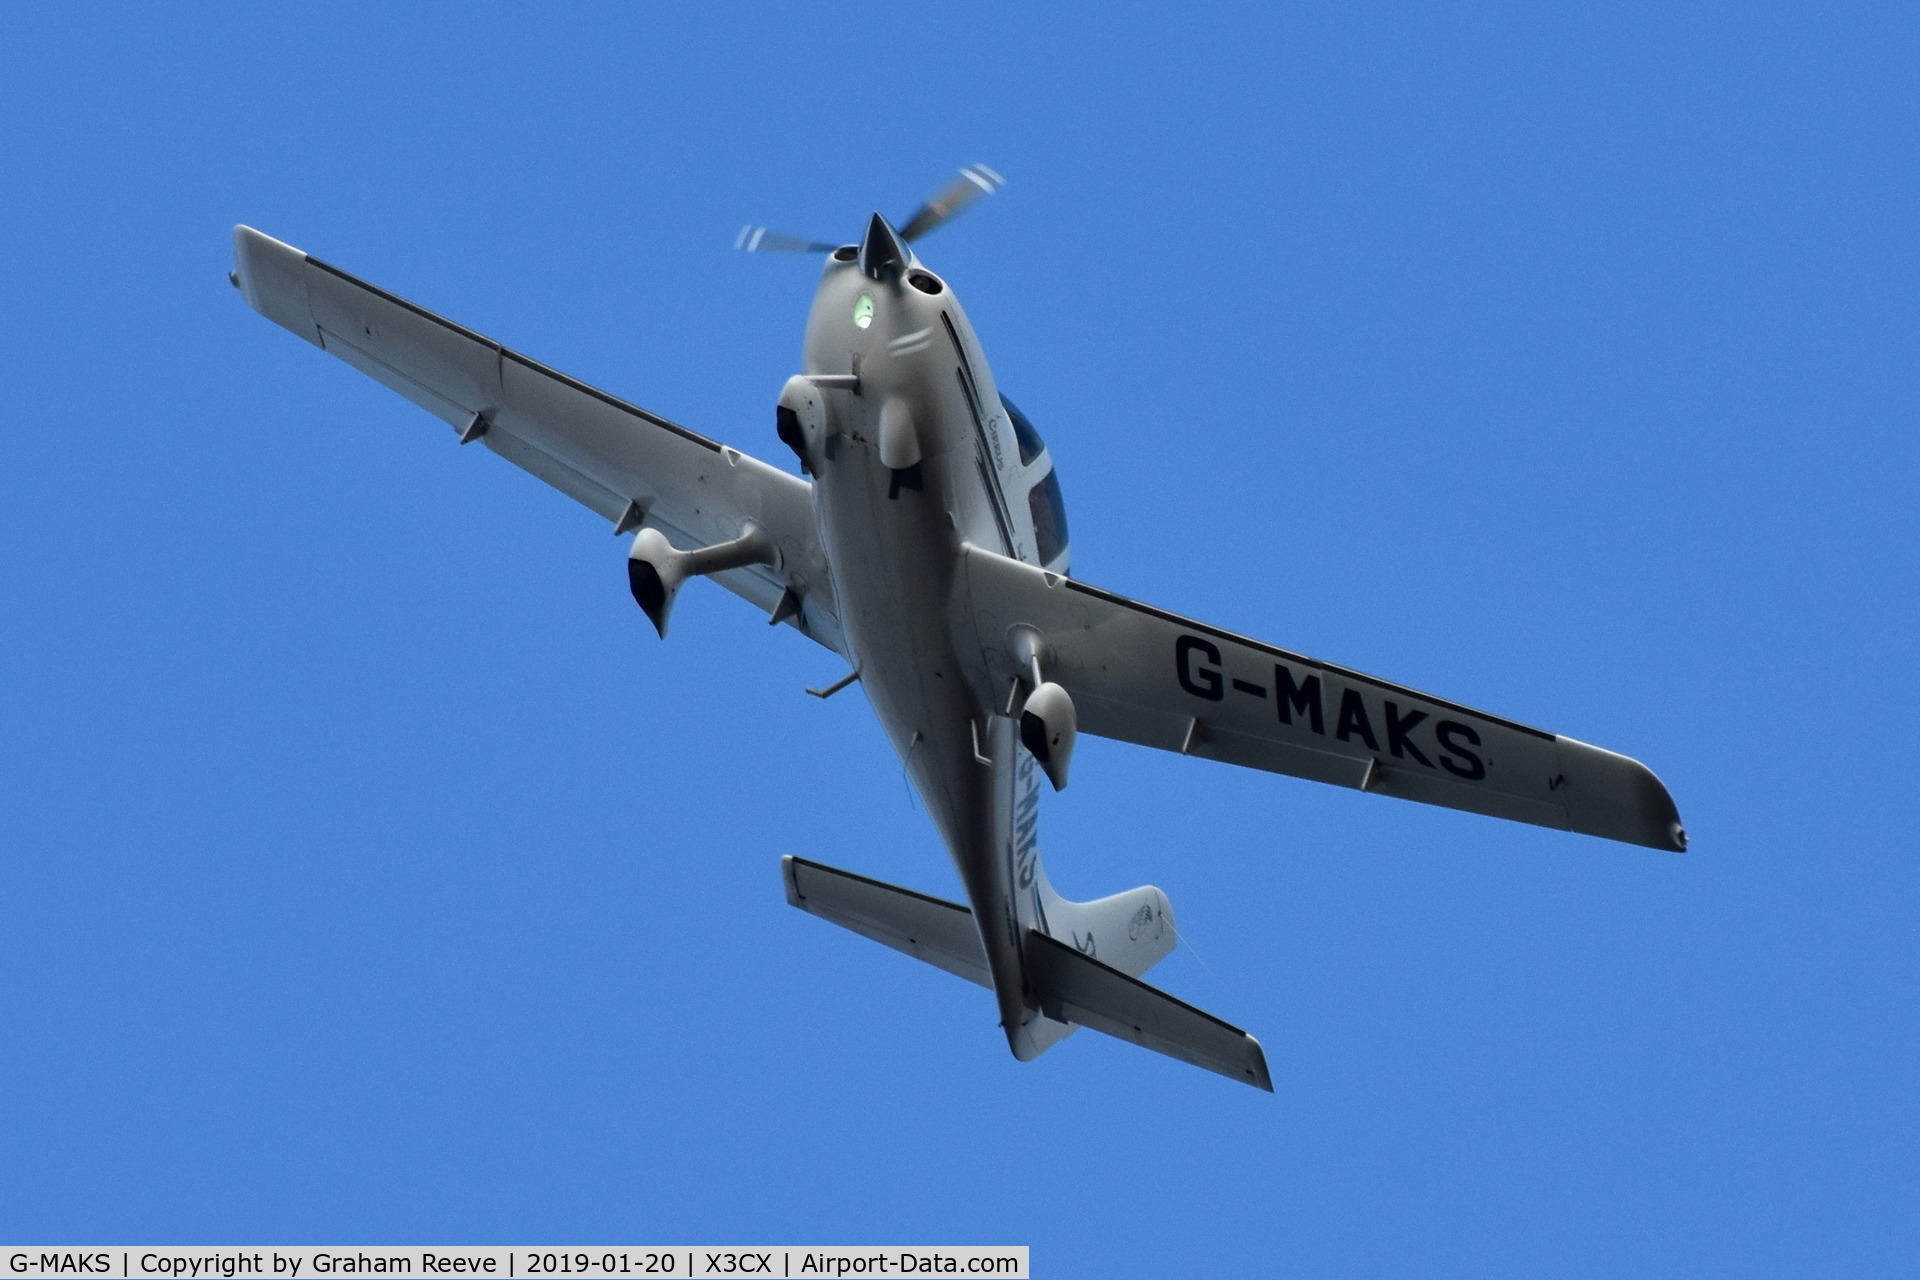 G-MAKS, 2002 Cirrus SR22 C/N 0367, Over head at Northrepps.